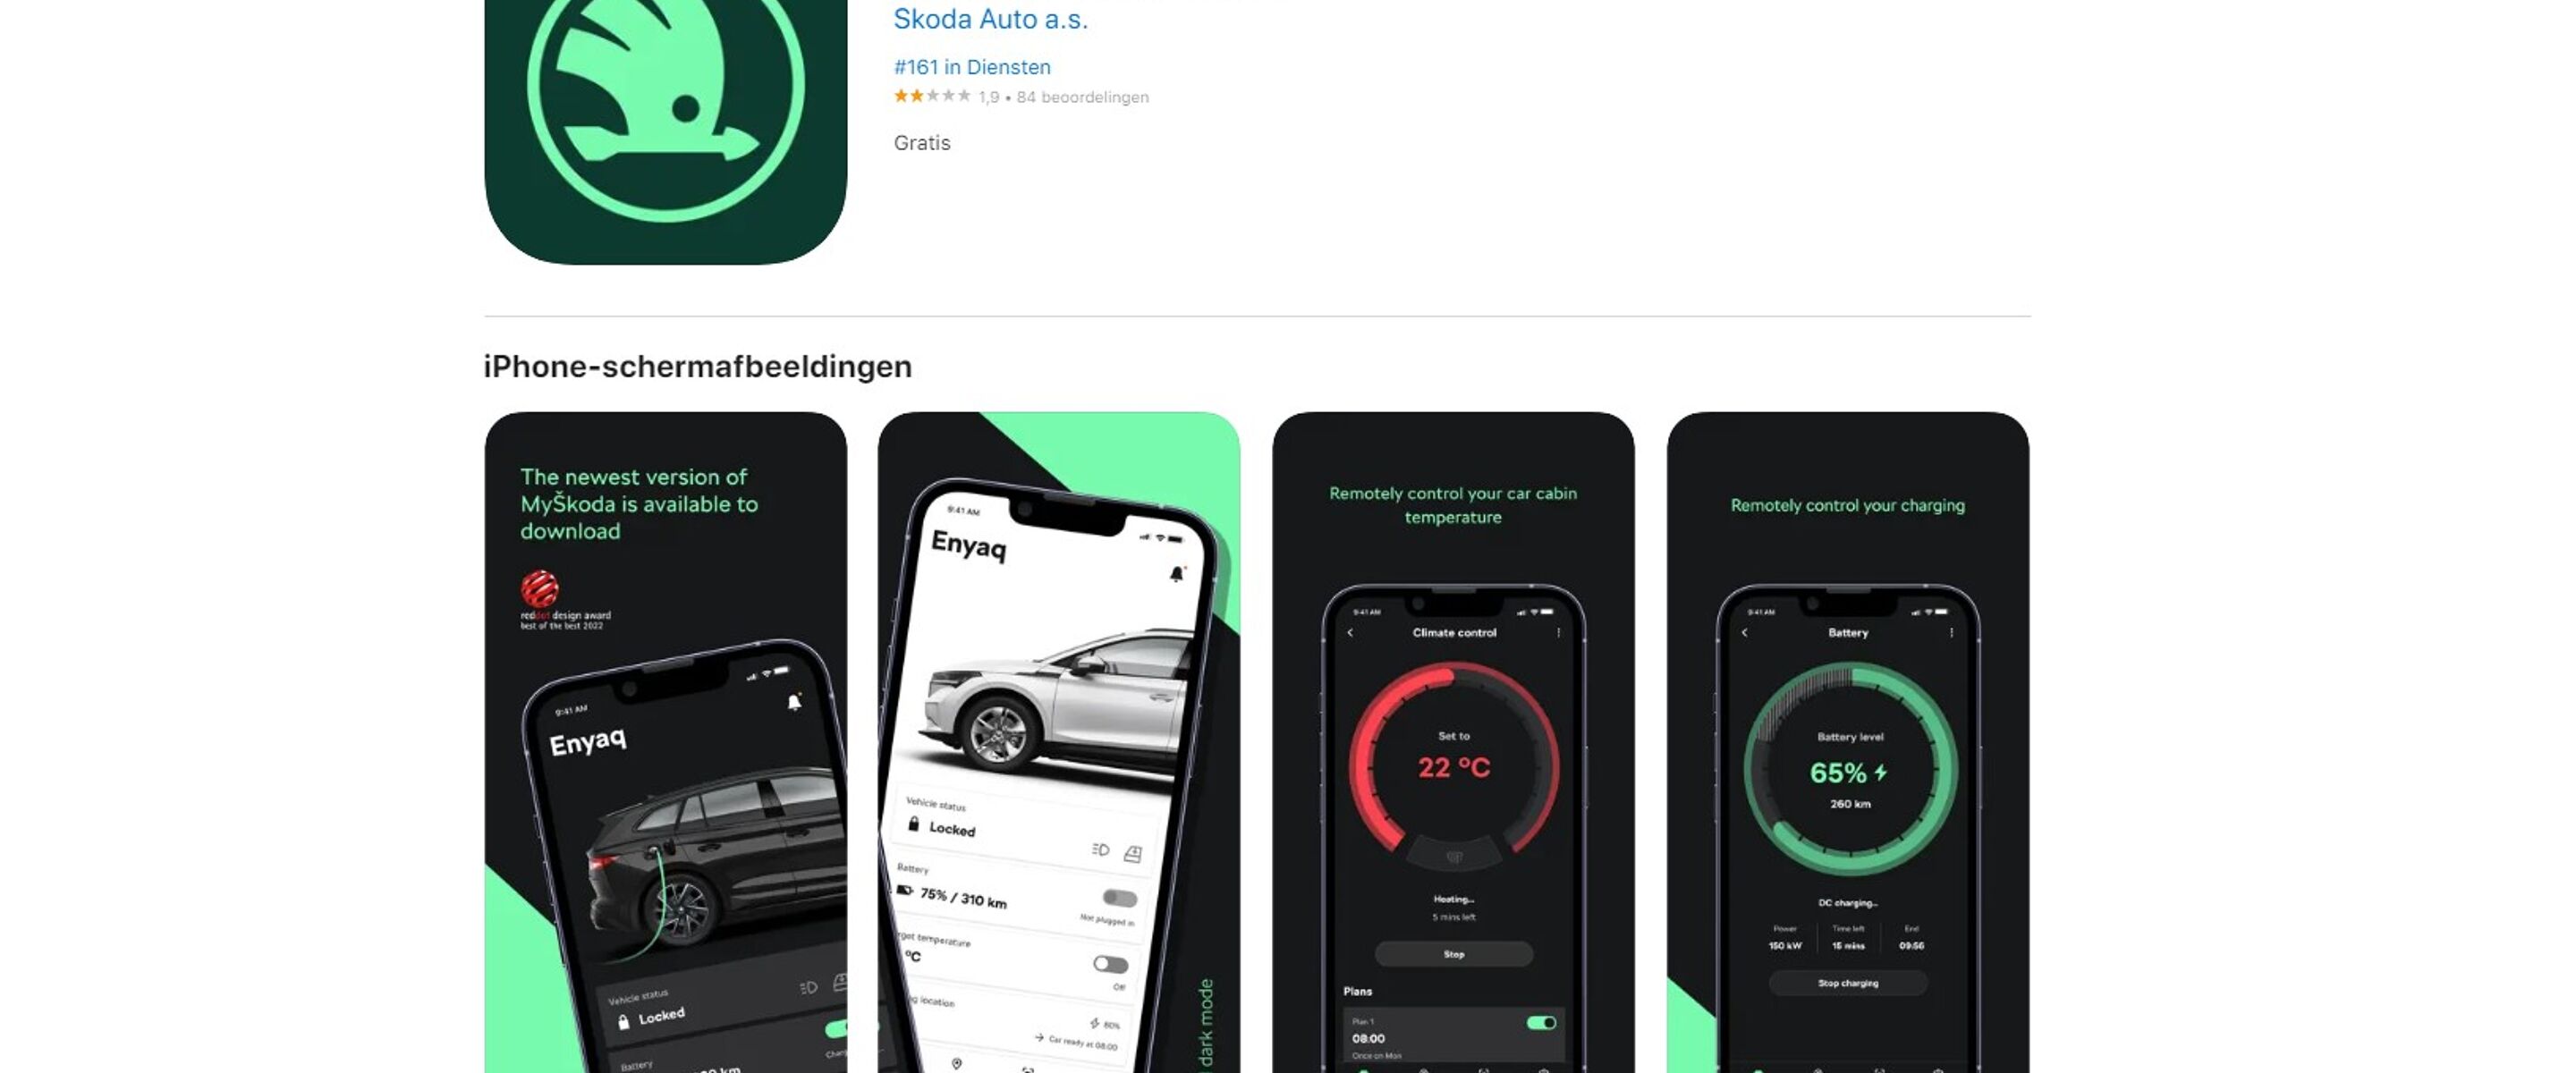 De vernieuwde MyŠkoda-app haalt nóg meer uit uw auto